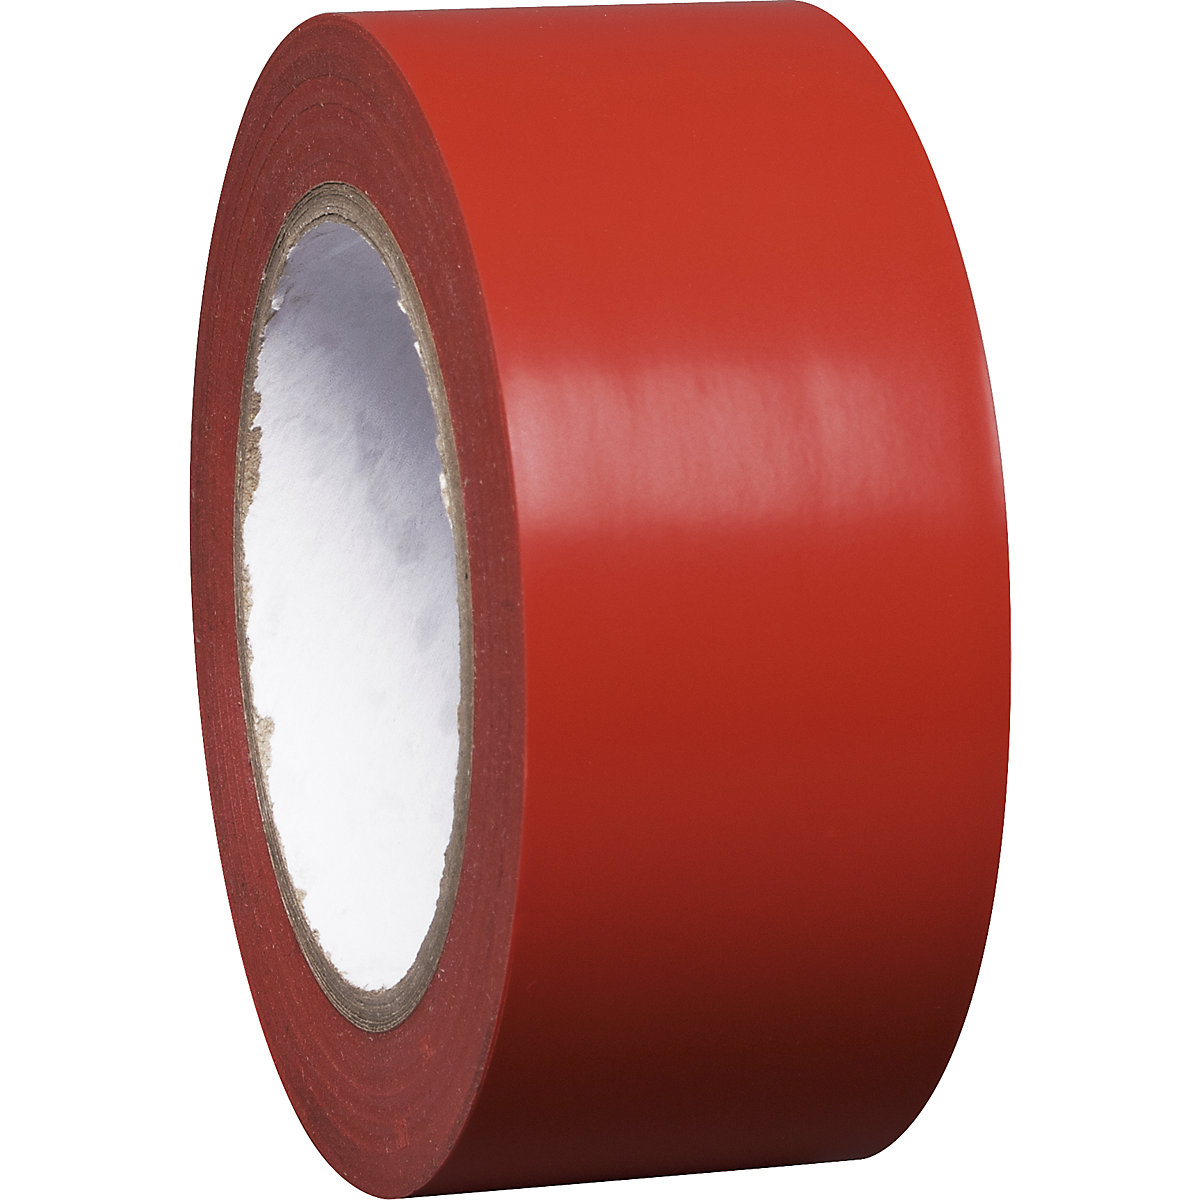 Bodenmarkierungsband aus Vinyl, einfarbig, Breite 50 mm, rot, VE 8 Rollen